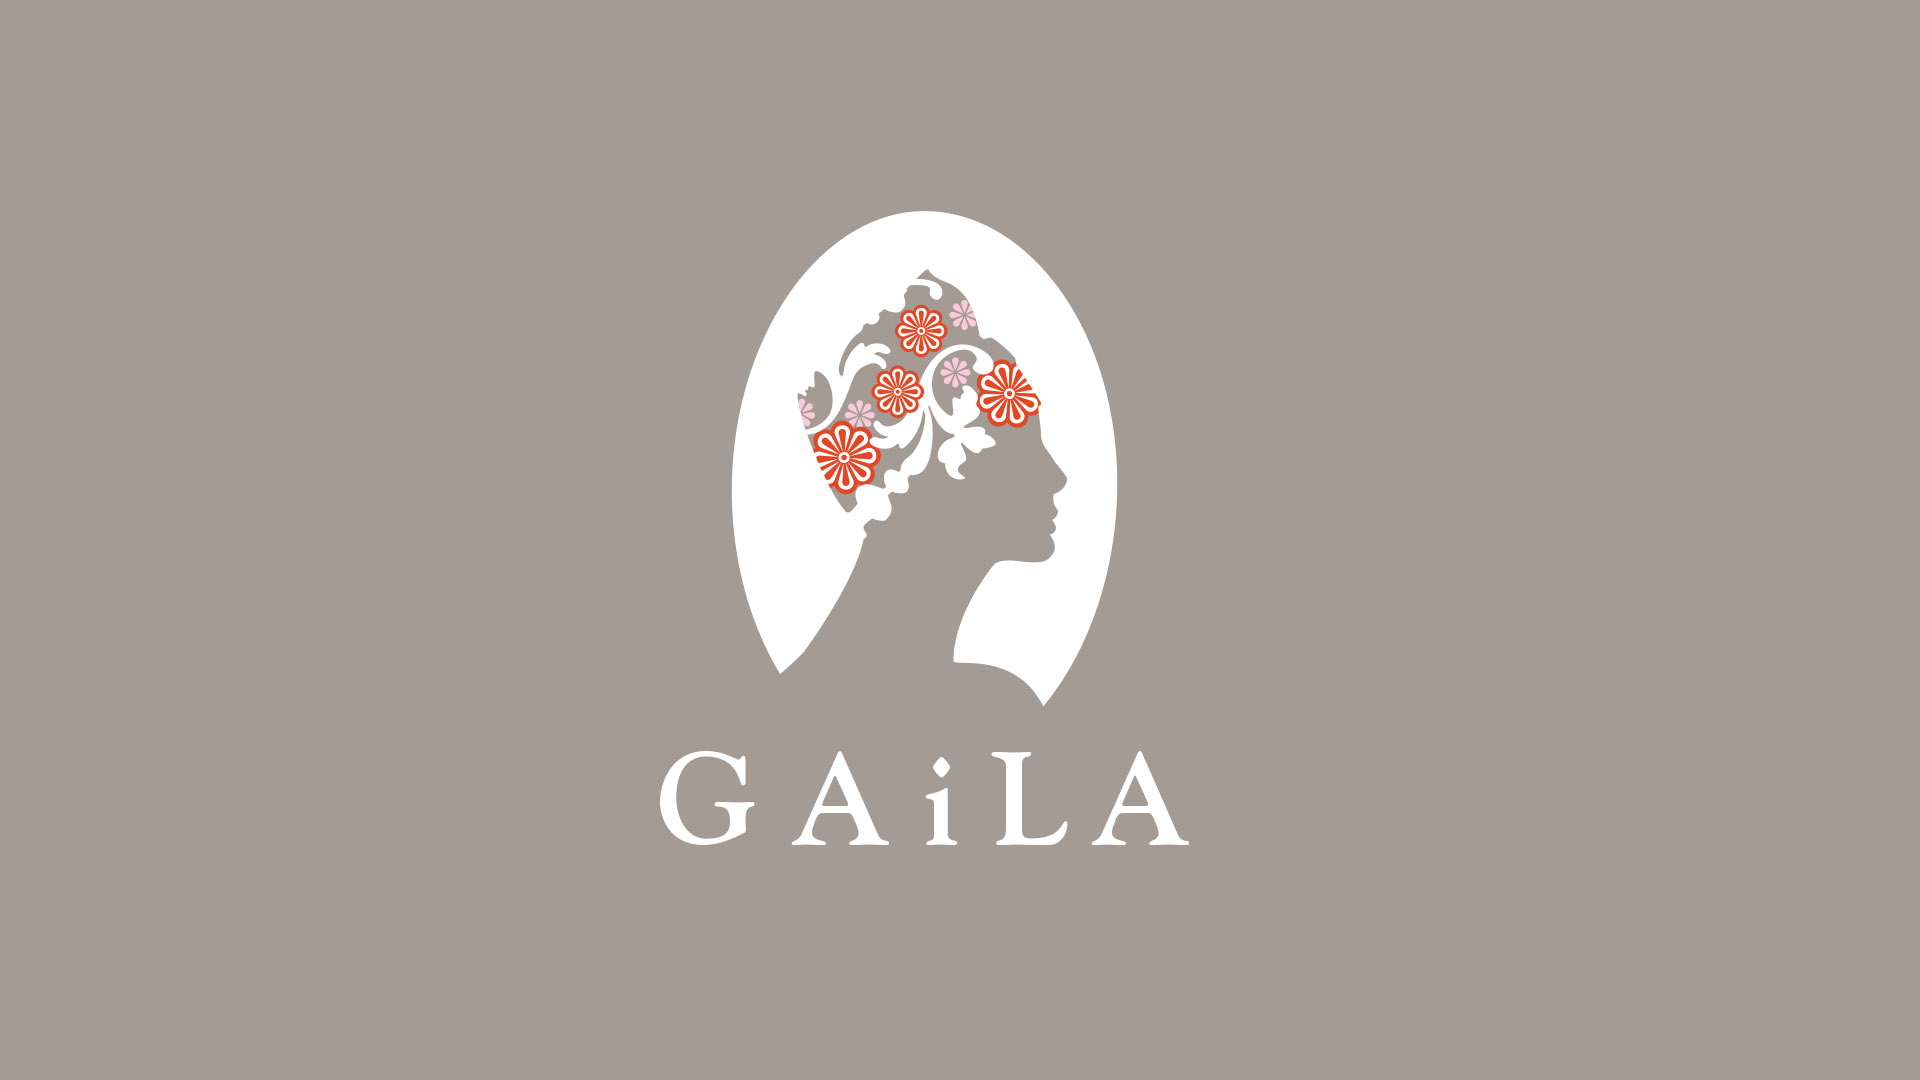 gaila logo on gray